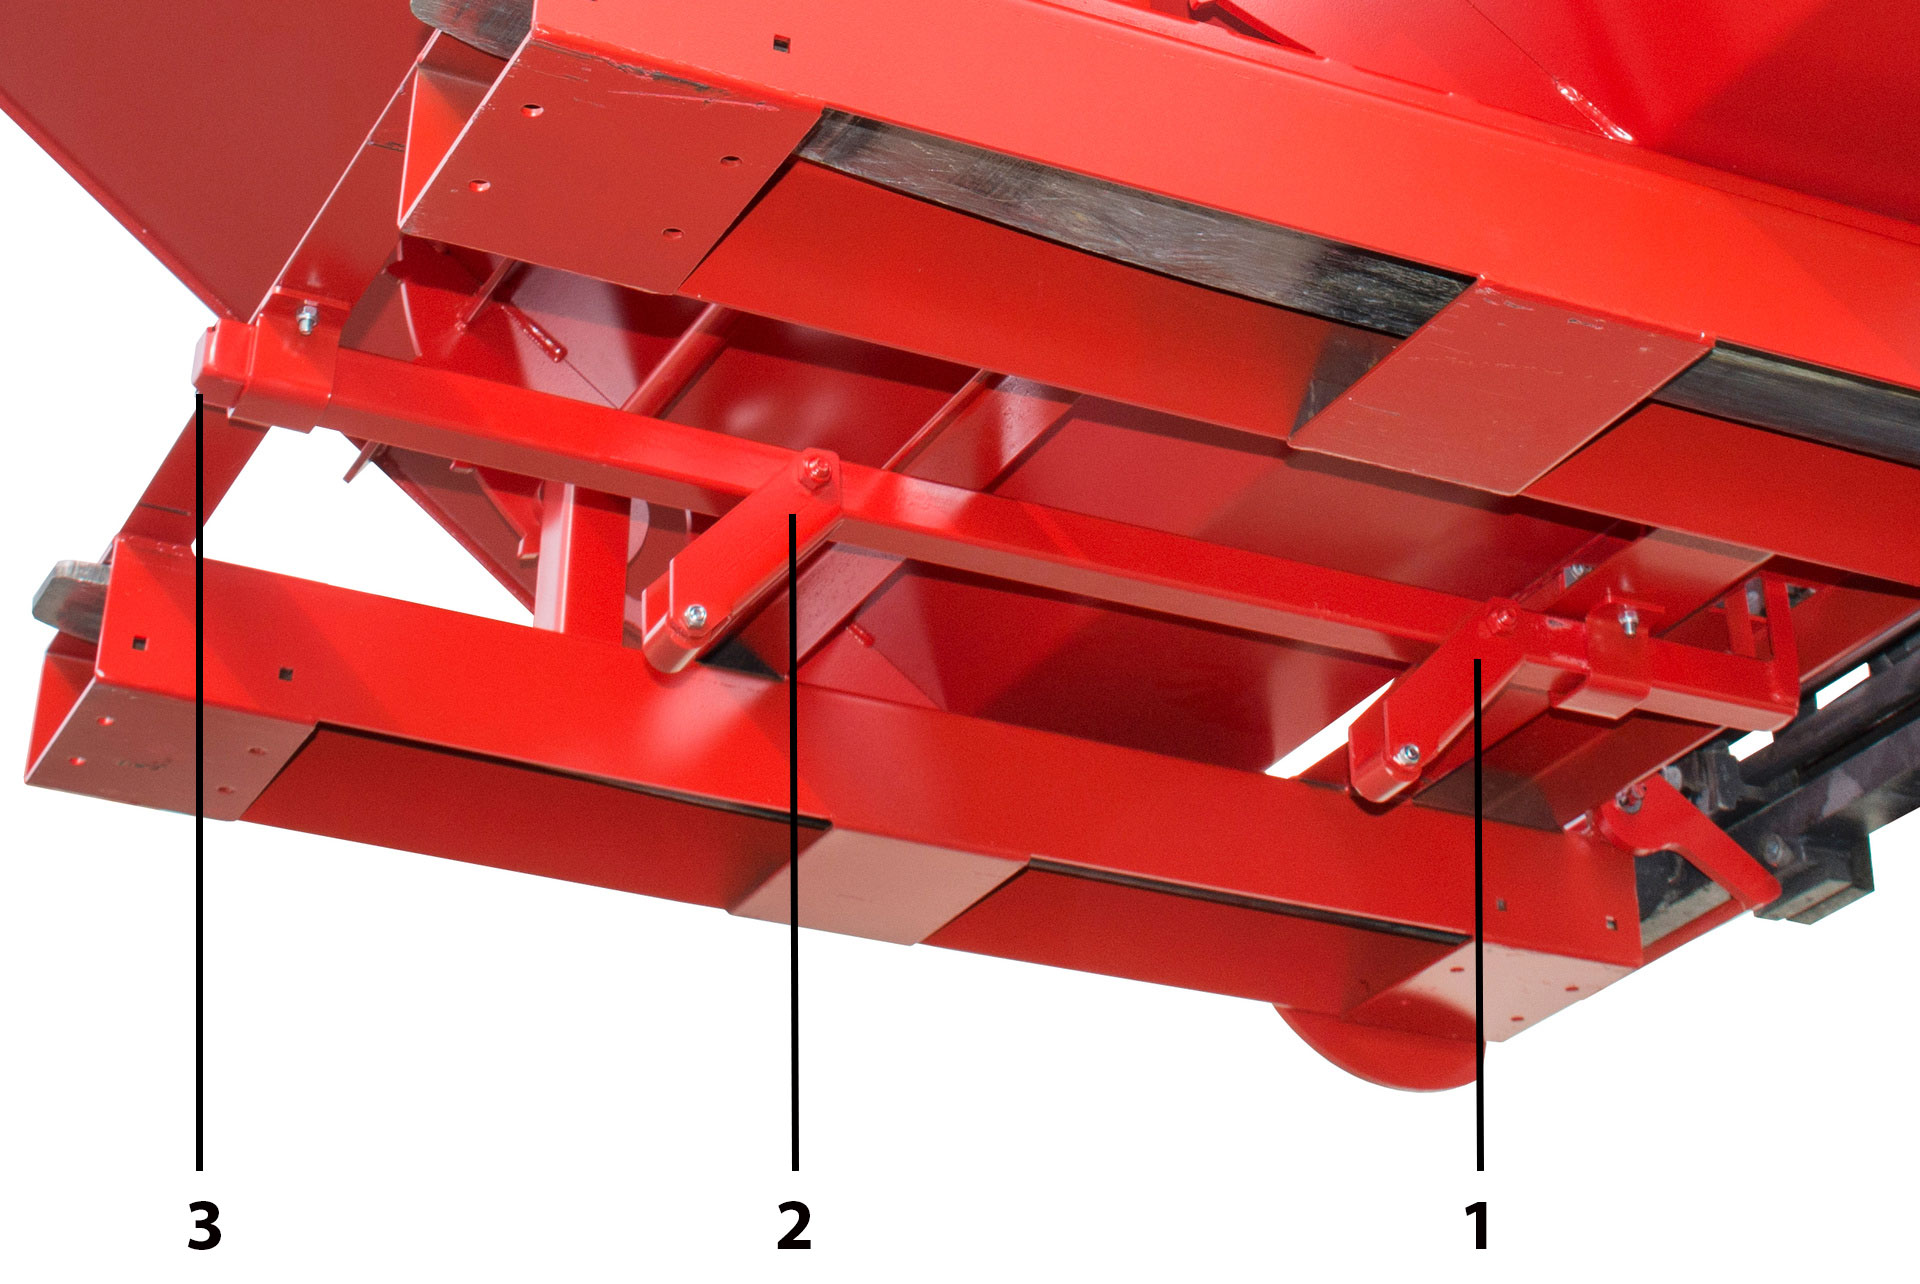 Bauer Anbaugeräte für Gabelstapler automatischer Kippbehälter Typ 4A 600 – 3 automatische Entriegelungspunkte